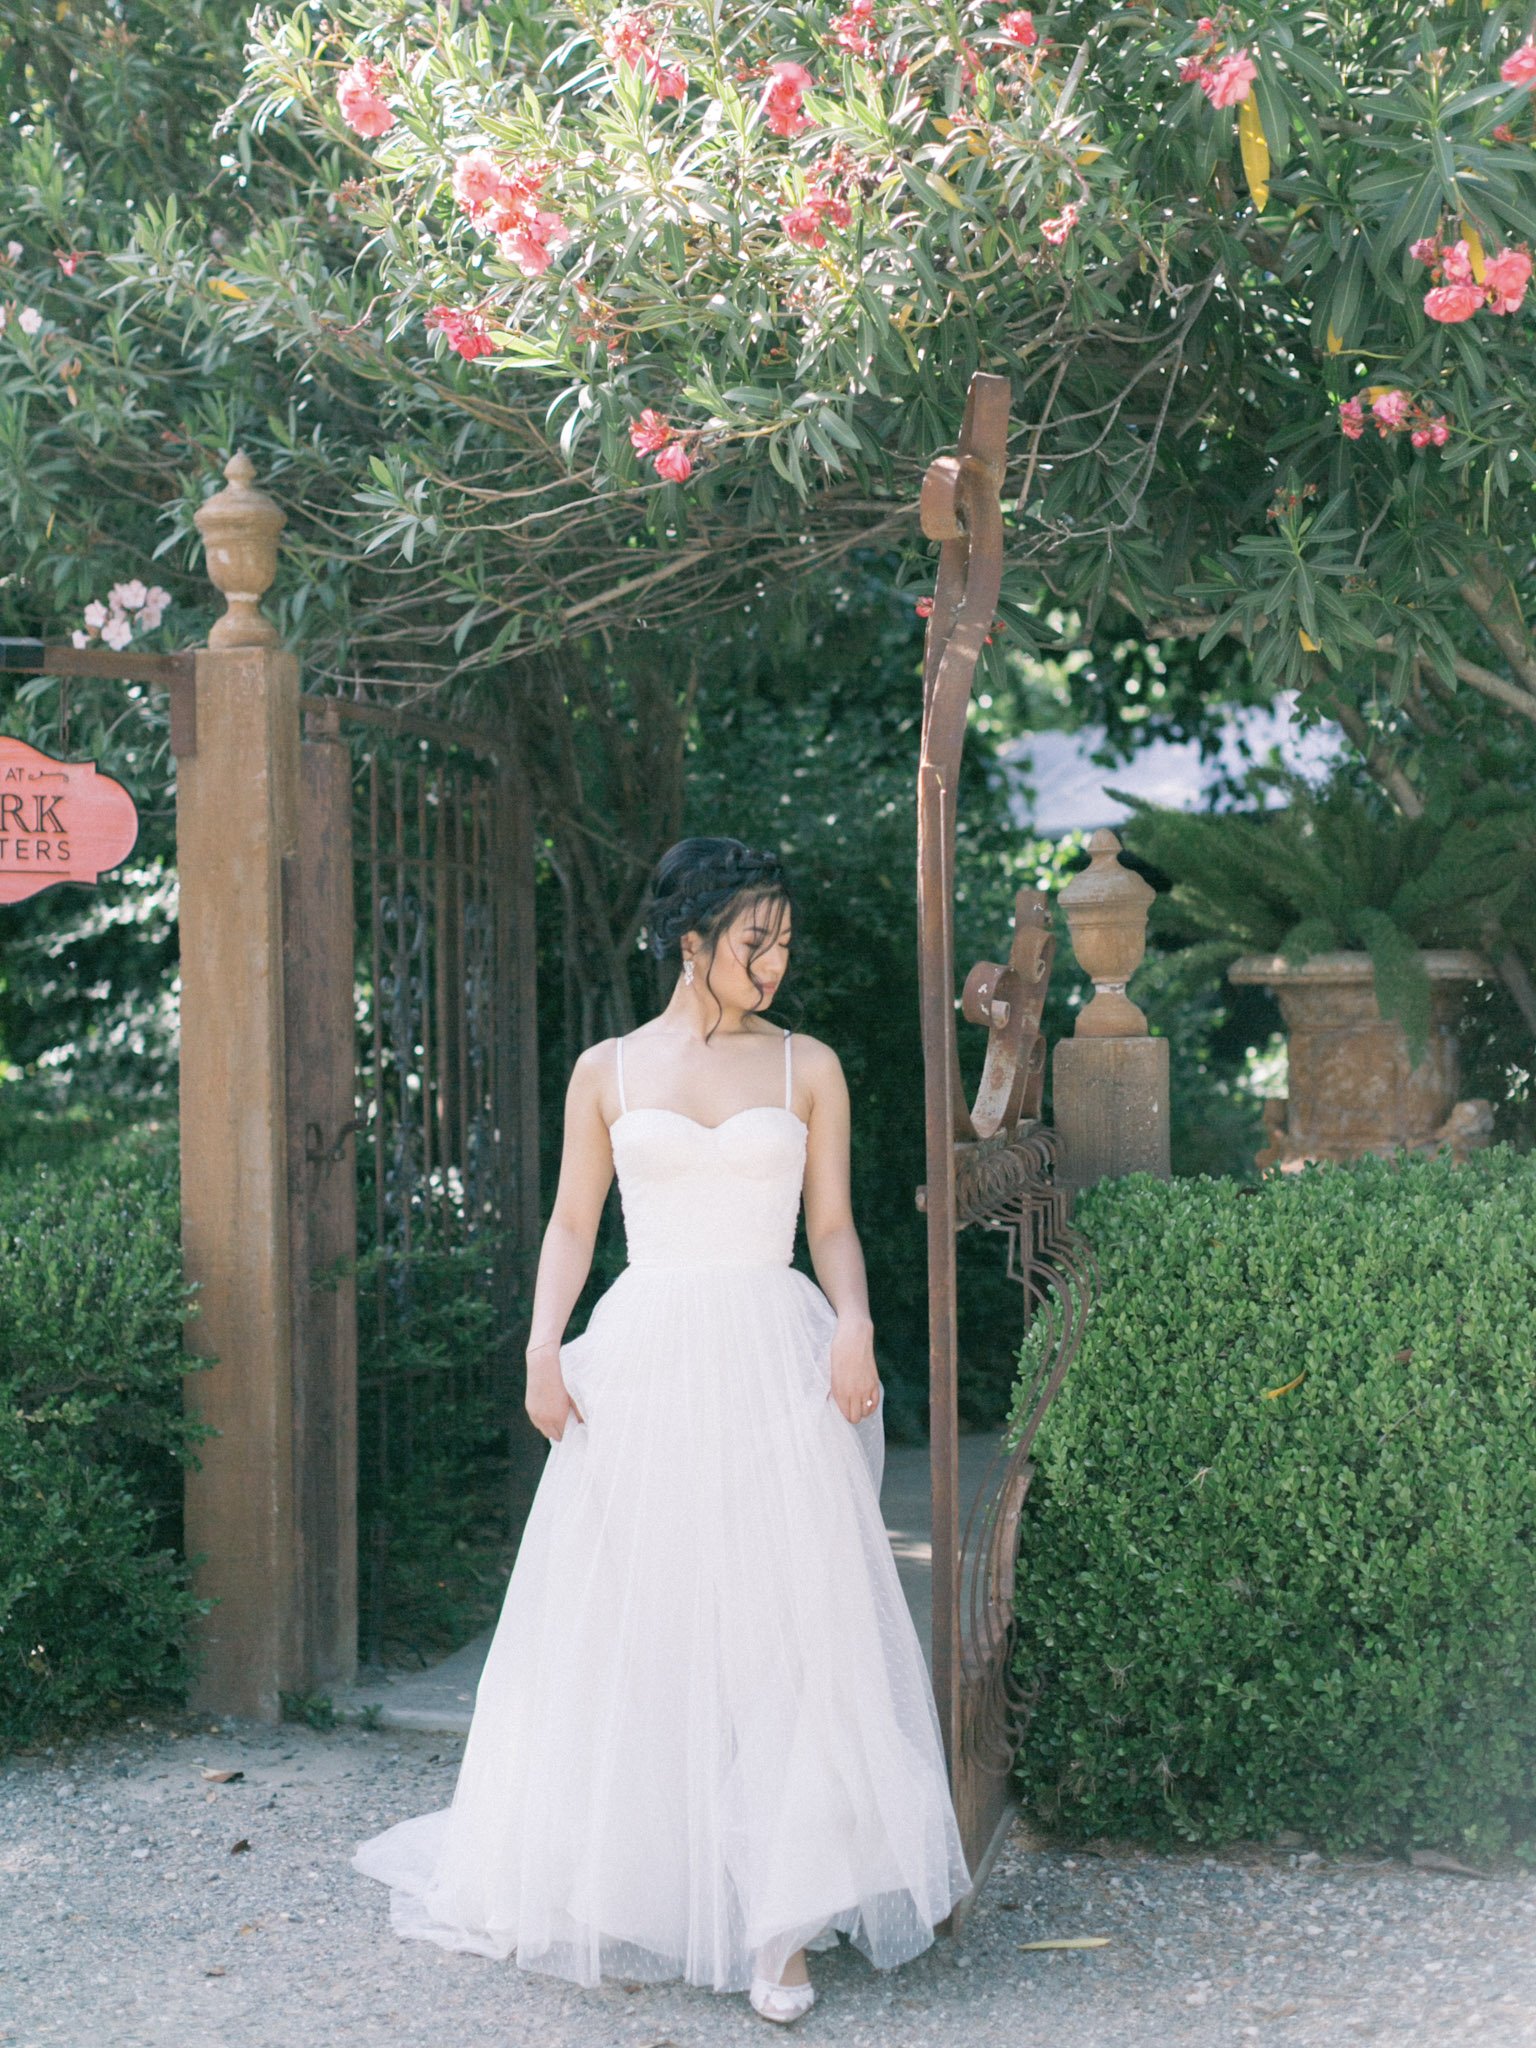 Phi-Style: Wedding Dress Silhouettes - Brooklyn Bride - Modern Wedding Blog